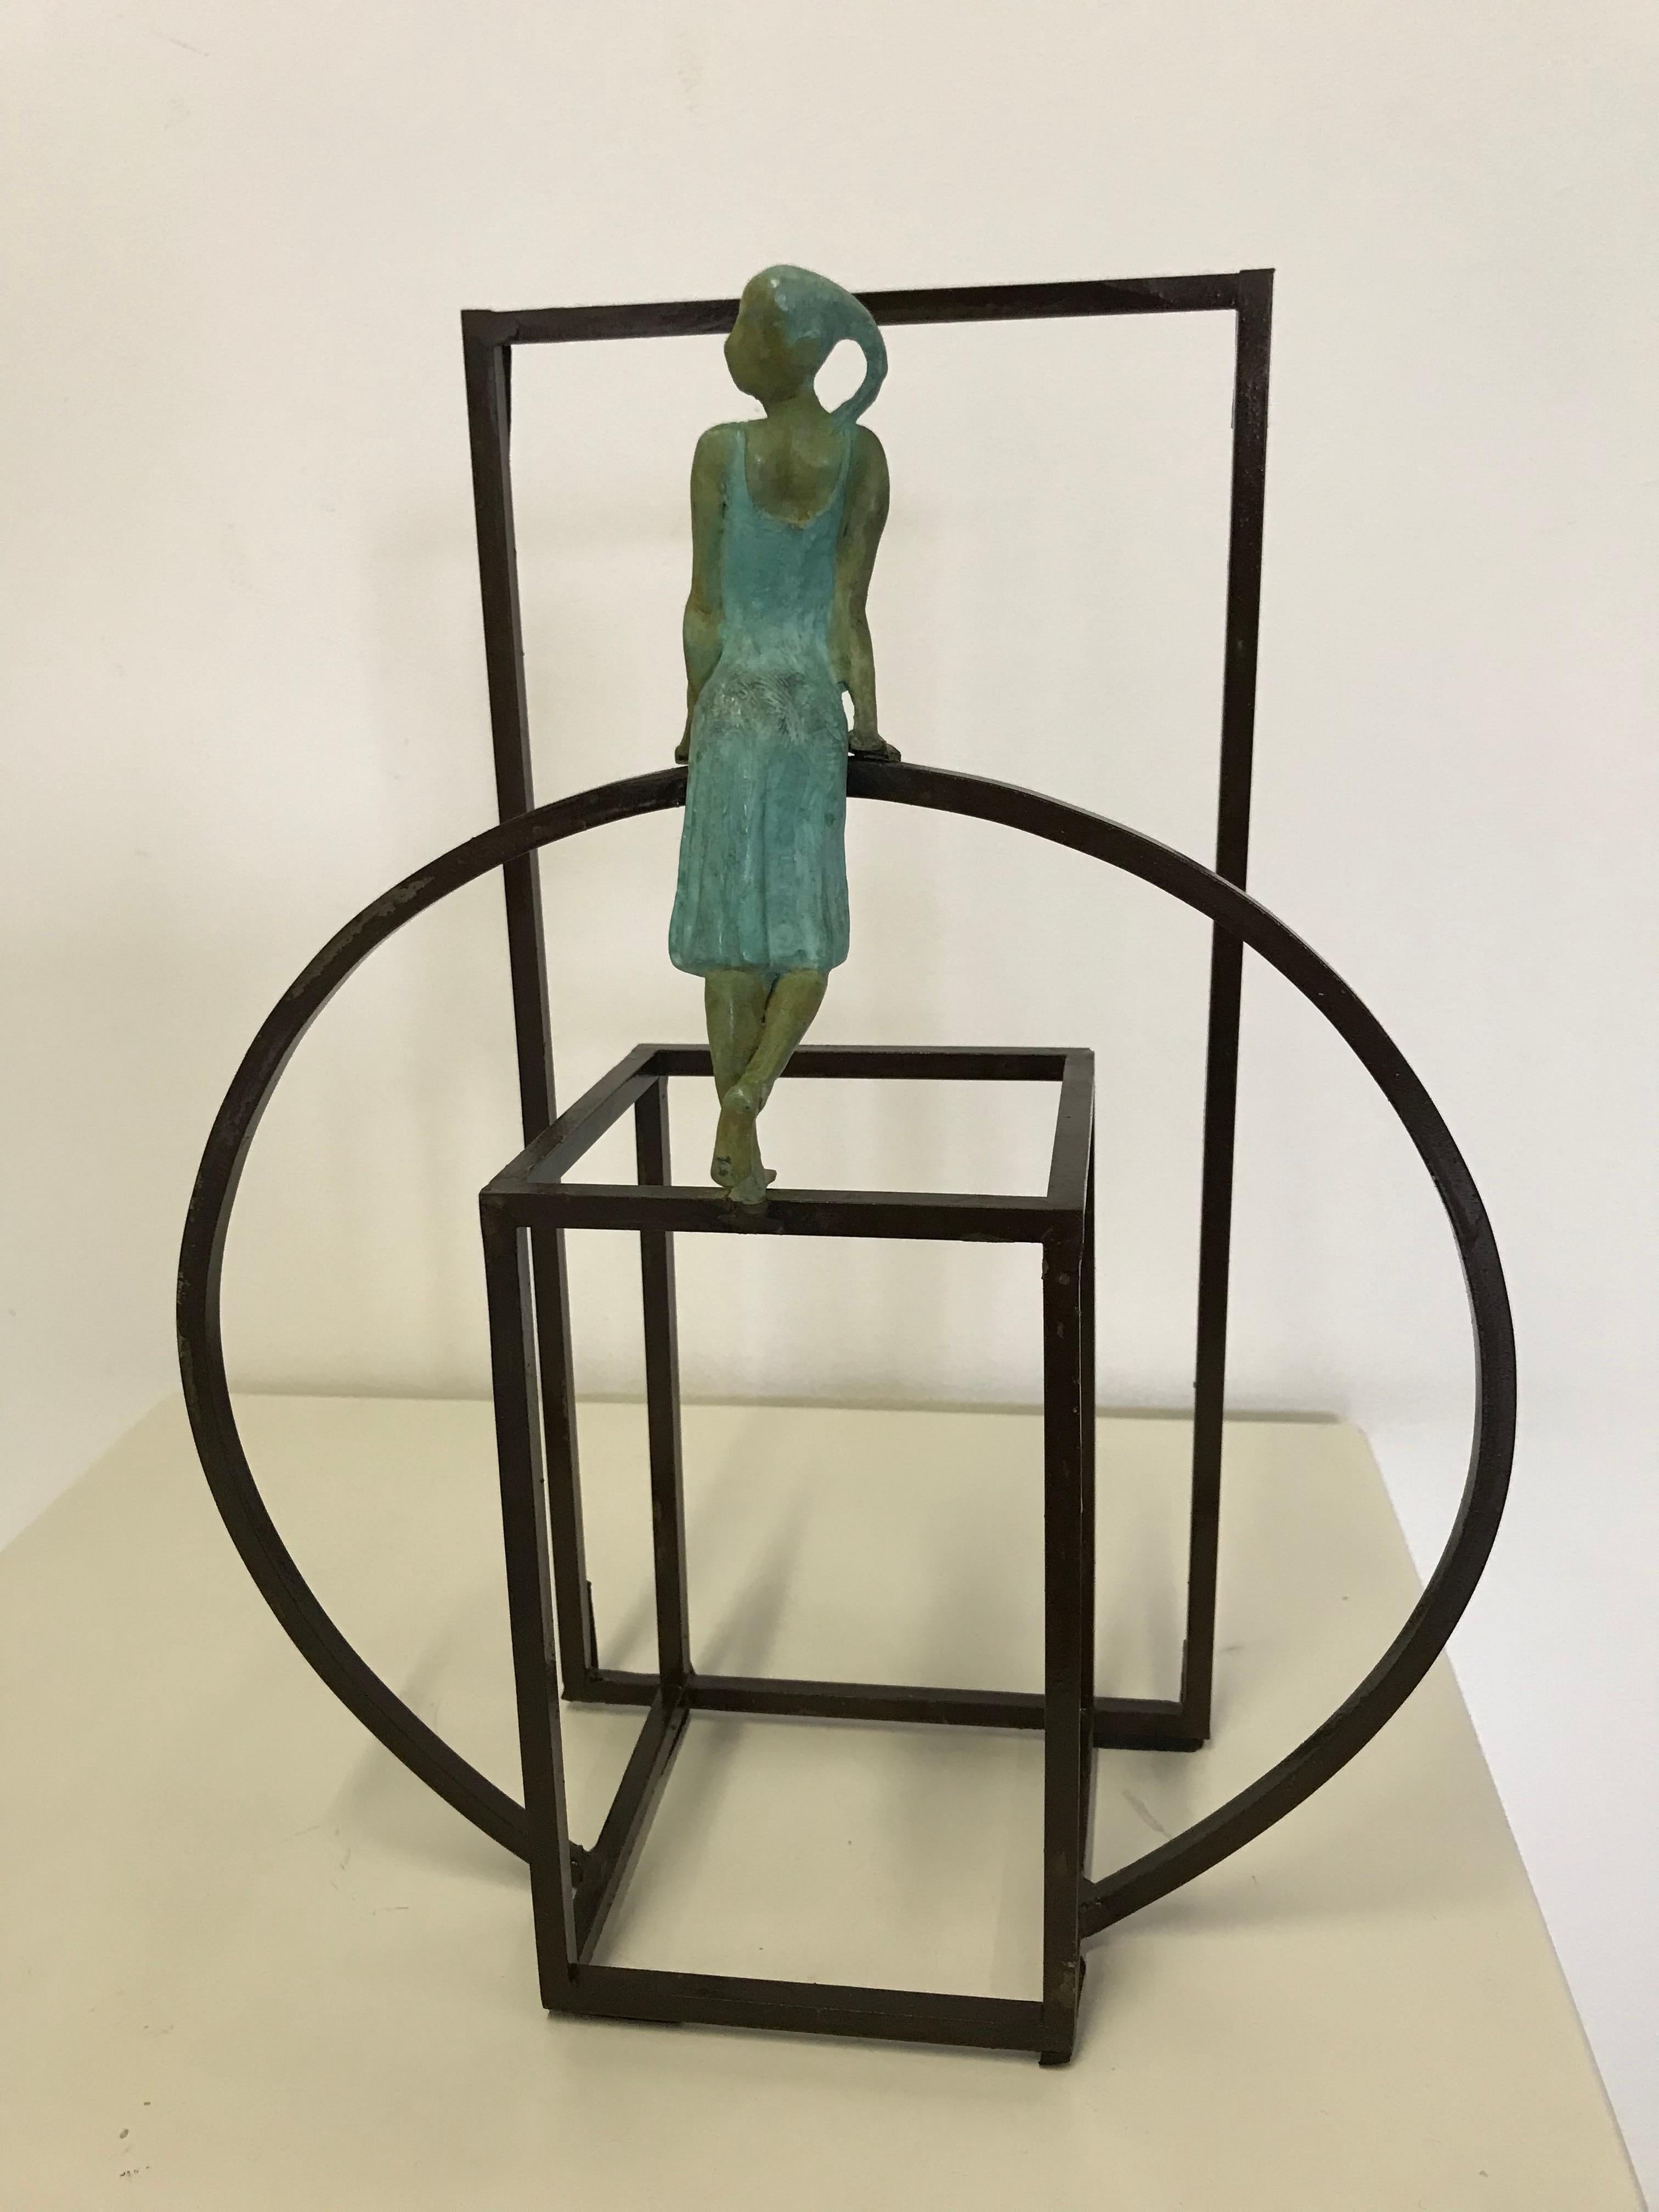 Joan Artigas Planas Figurative Sculpture - "Cuba Mambo" contemporary bronze table, mural sculpture figurative Cuba dancing